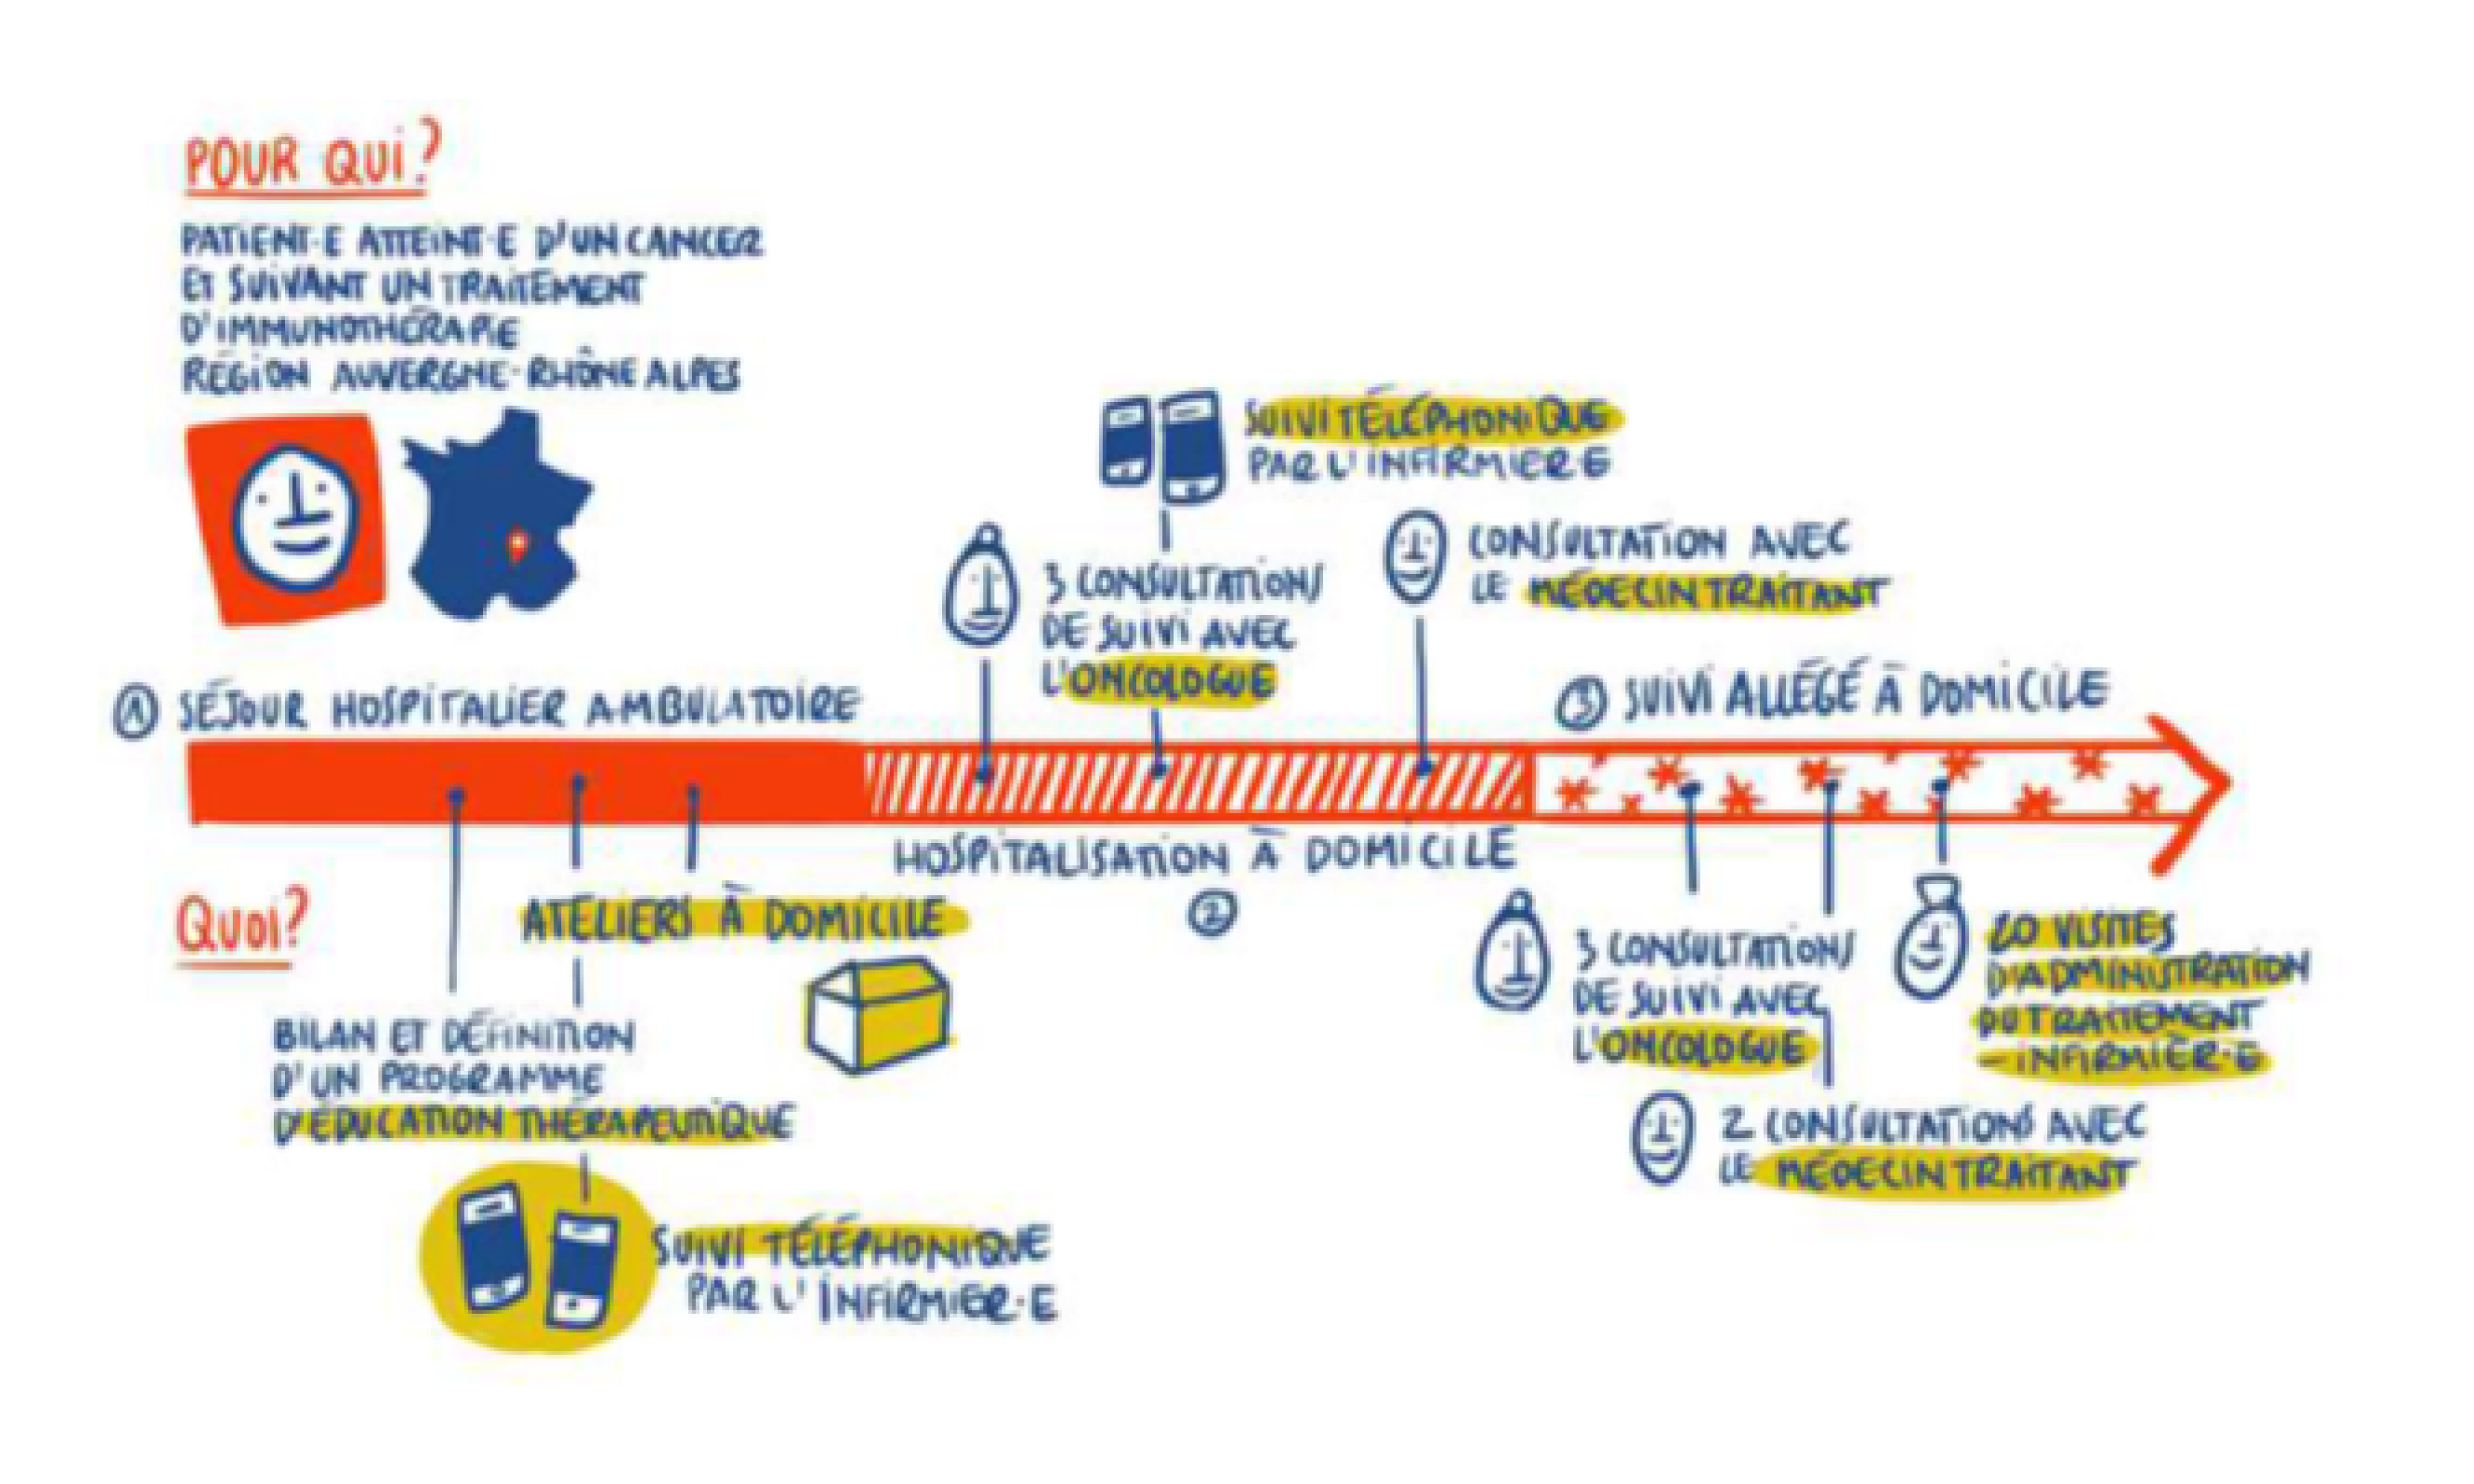 Schéma du parcours expérimental pour les traitements d'immunothérapie (voir description détaillée ci-après)